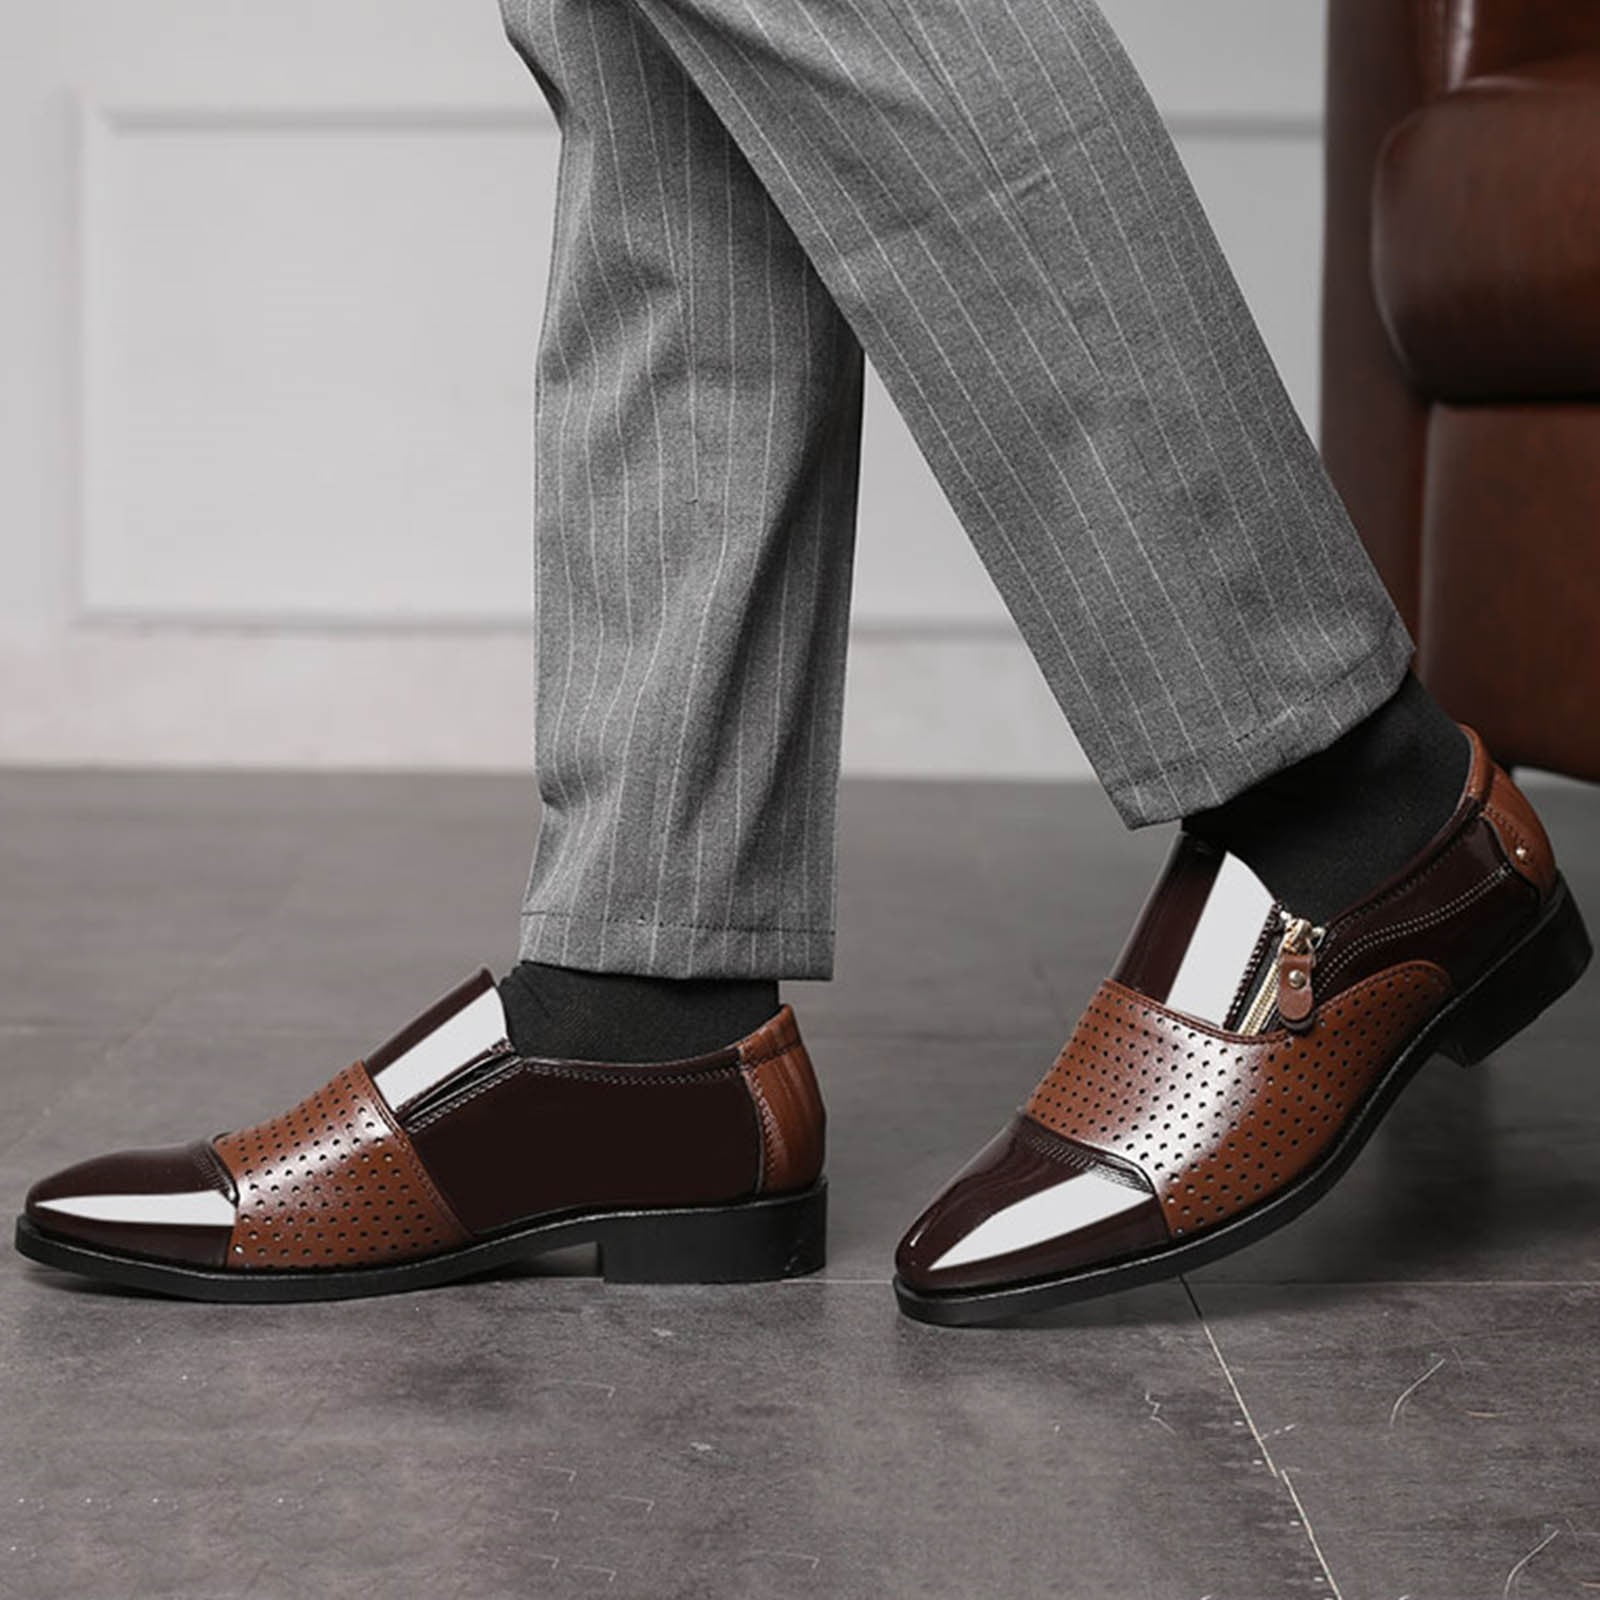 Comfortable Men's Dress Shoes & Formal Shoes